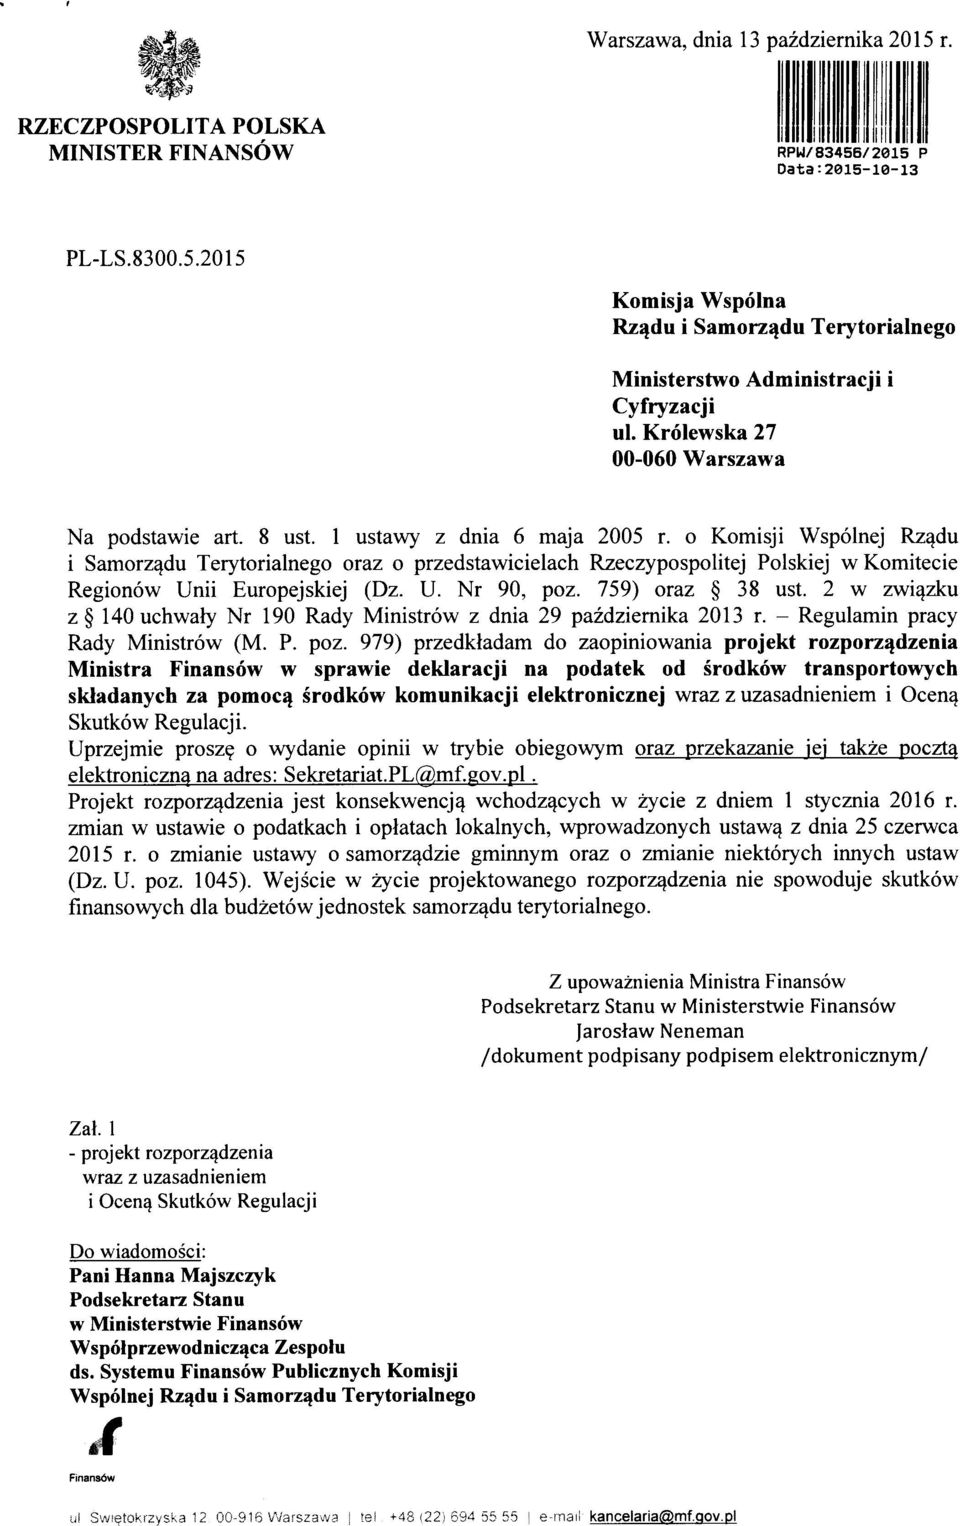 o Komisji Wspolnej Rz^du i Samorz^du Terytorialnego oraz o przedstawicielach Rzeczypospolitej Polskiej wkomitecie Regionow Unii Europejskiej (Dz. U. Nr 90, poz. 759) oraz 38 ust.